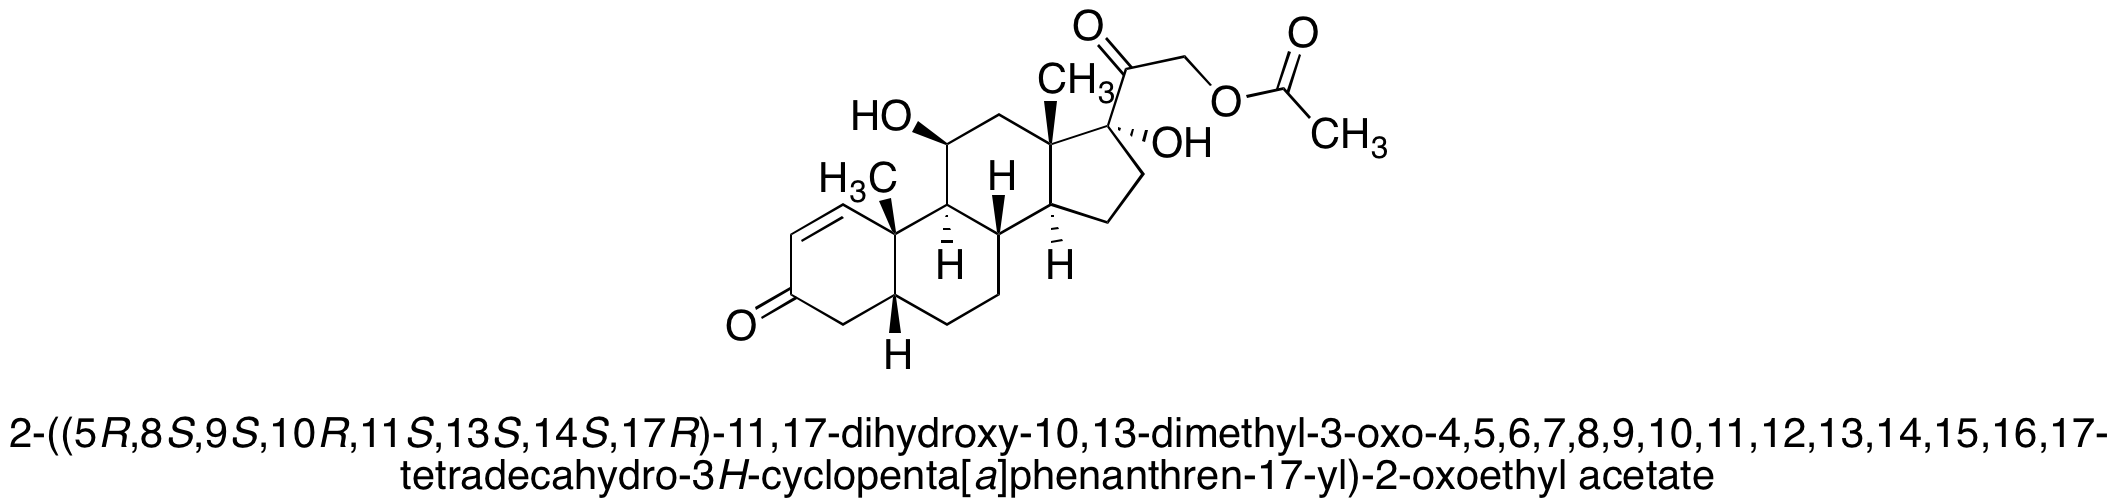 5β-4,5-Dihydro Prednisolone 21-Acetate